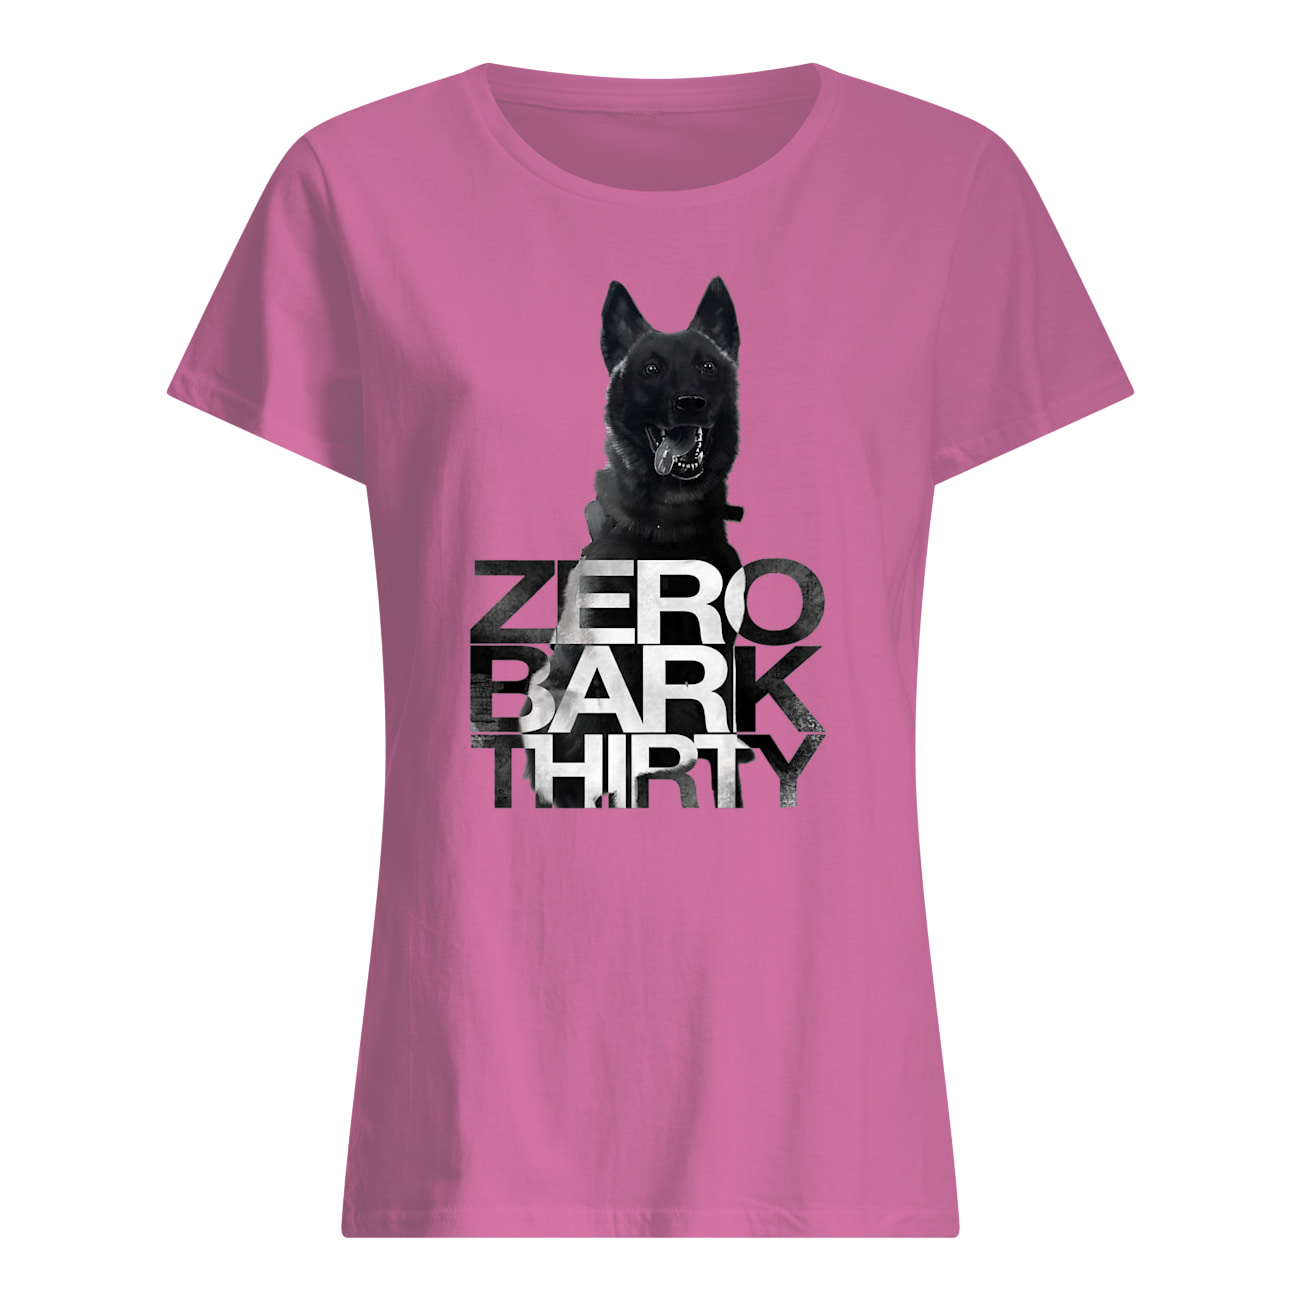 Zero bark thirty belgian malinois military dog hero womens shirt